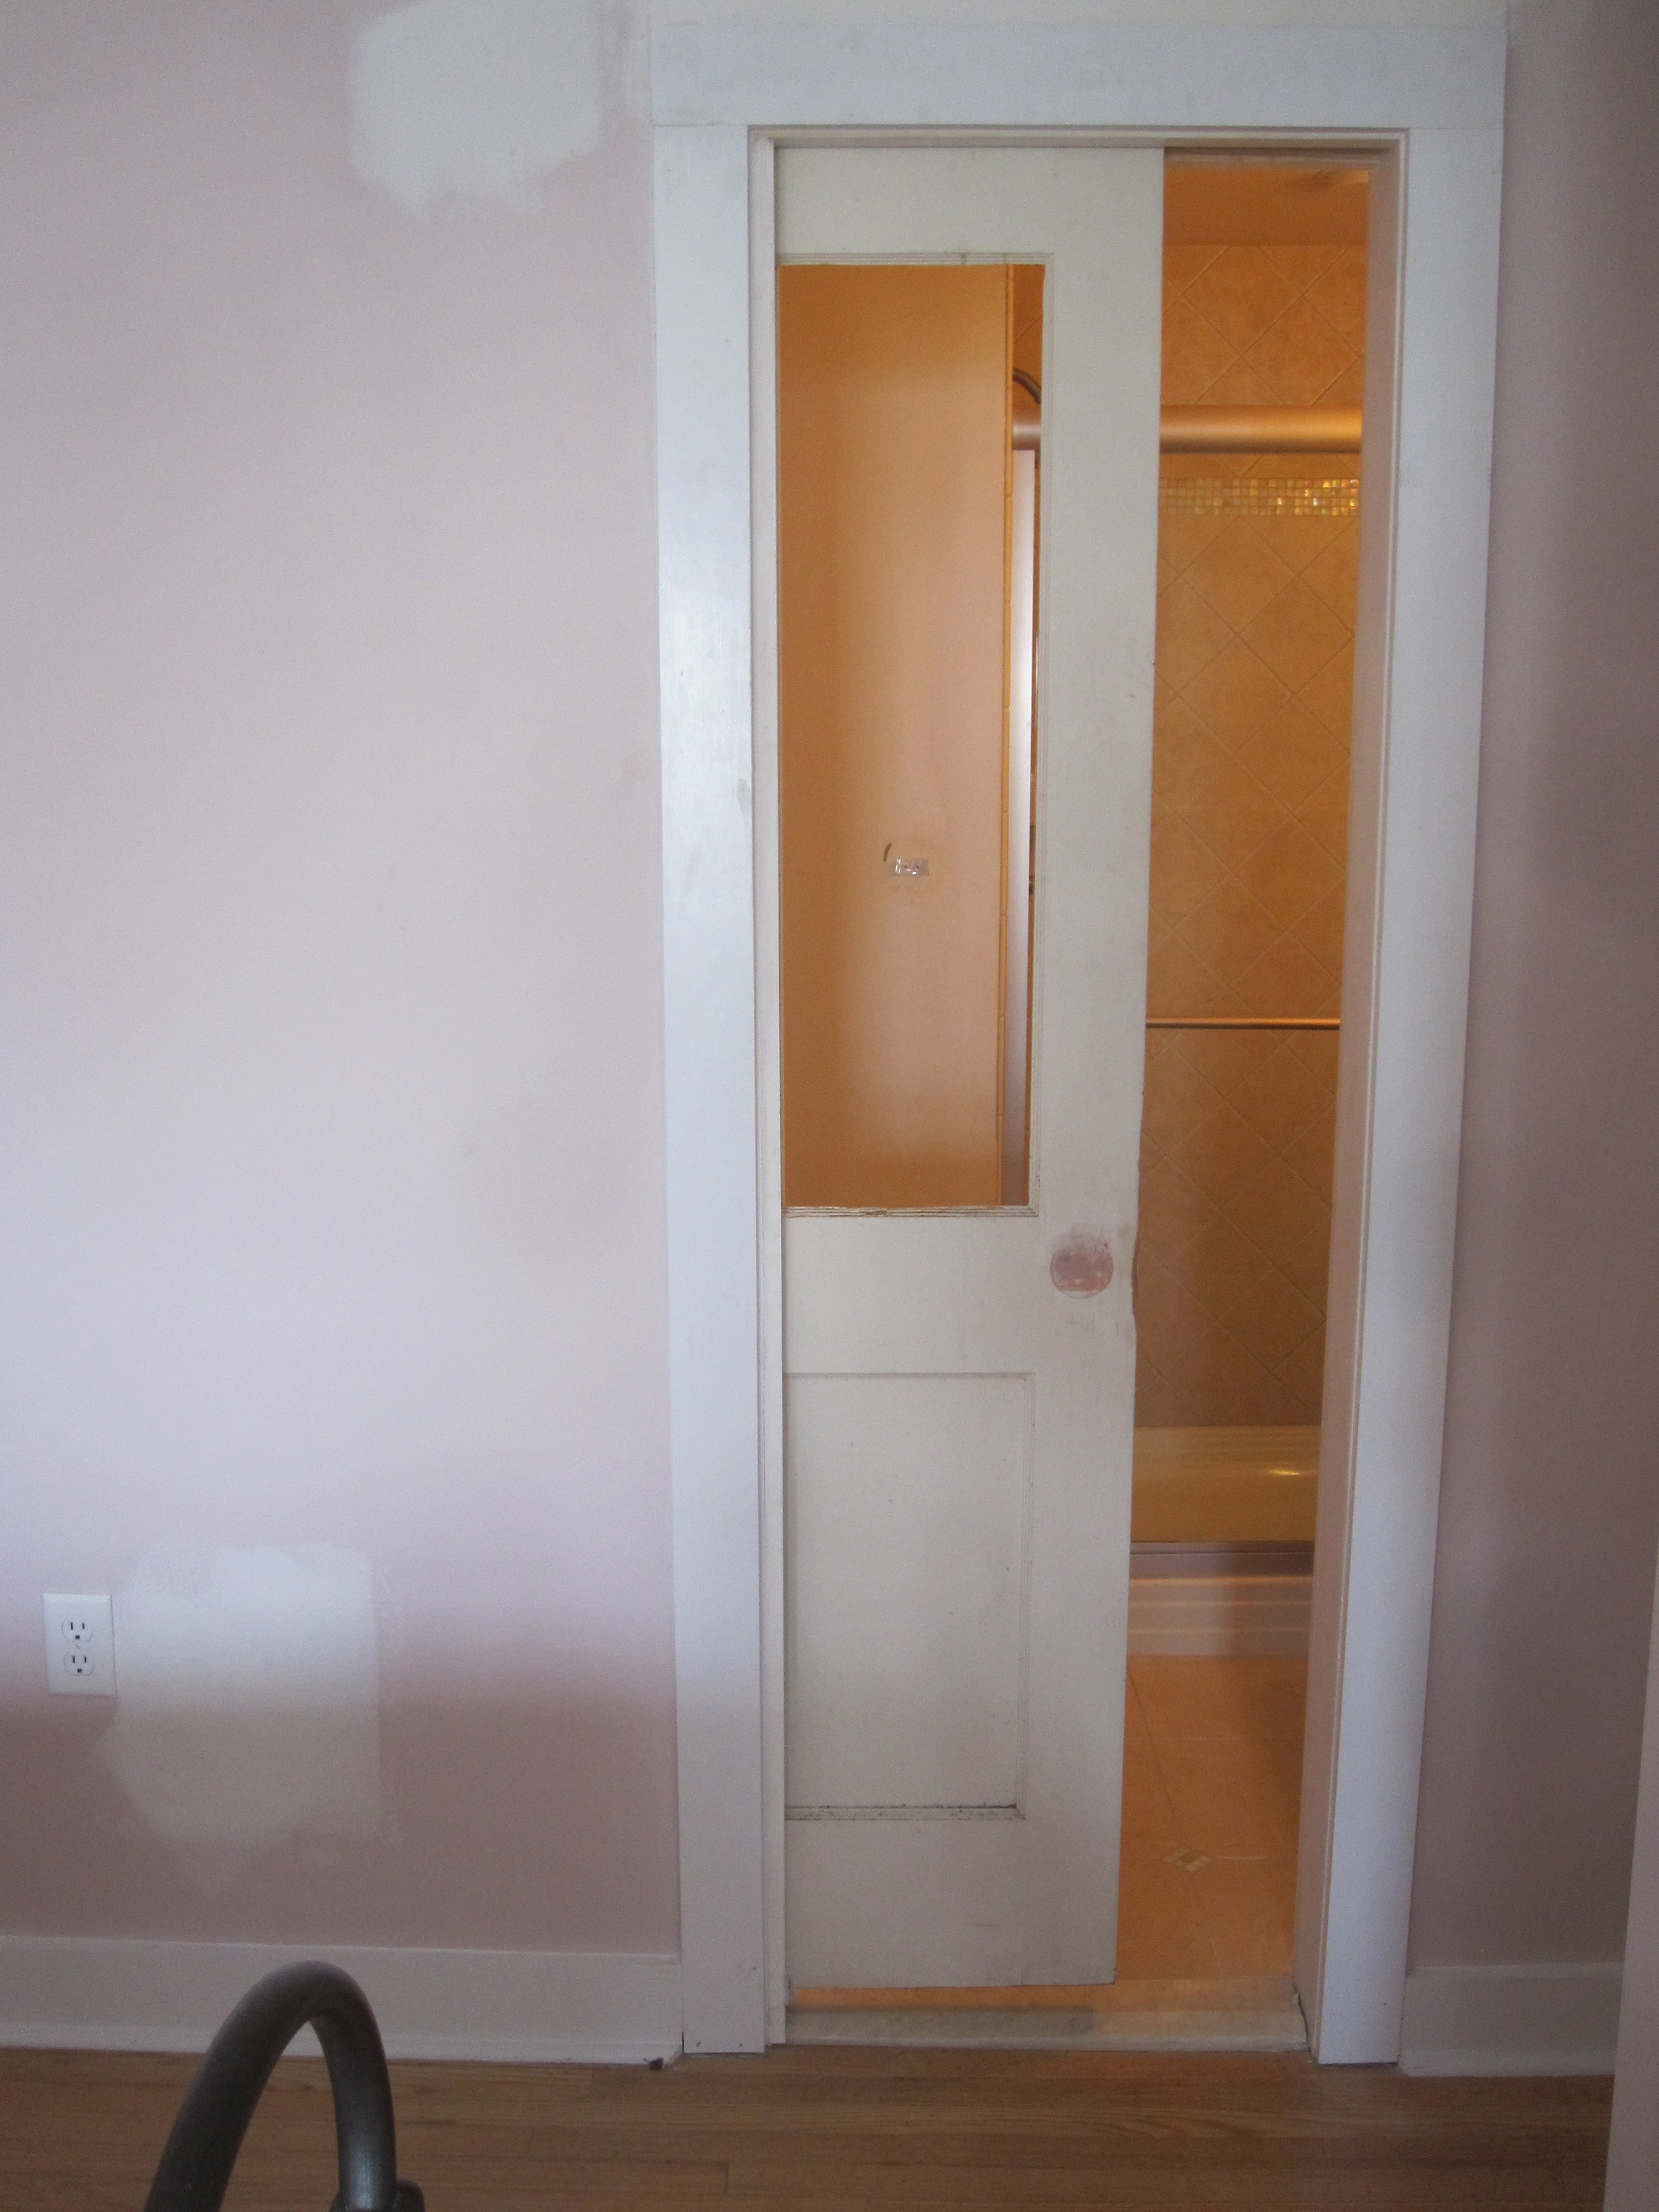 Best ideas about Bathroom Pocket Doors
. Save or Pin Renovation Report…Pocket Door Progress Now.